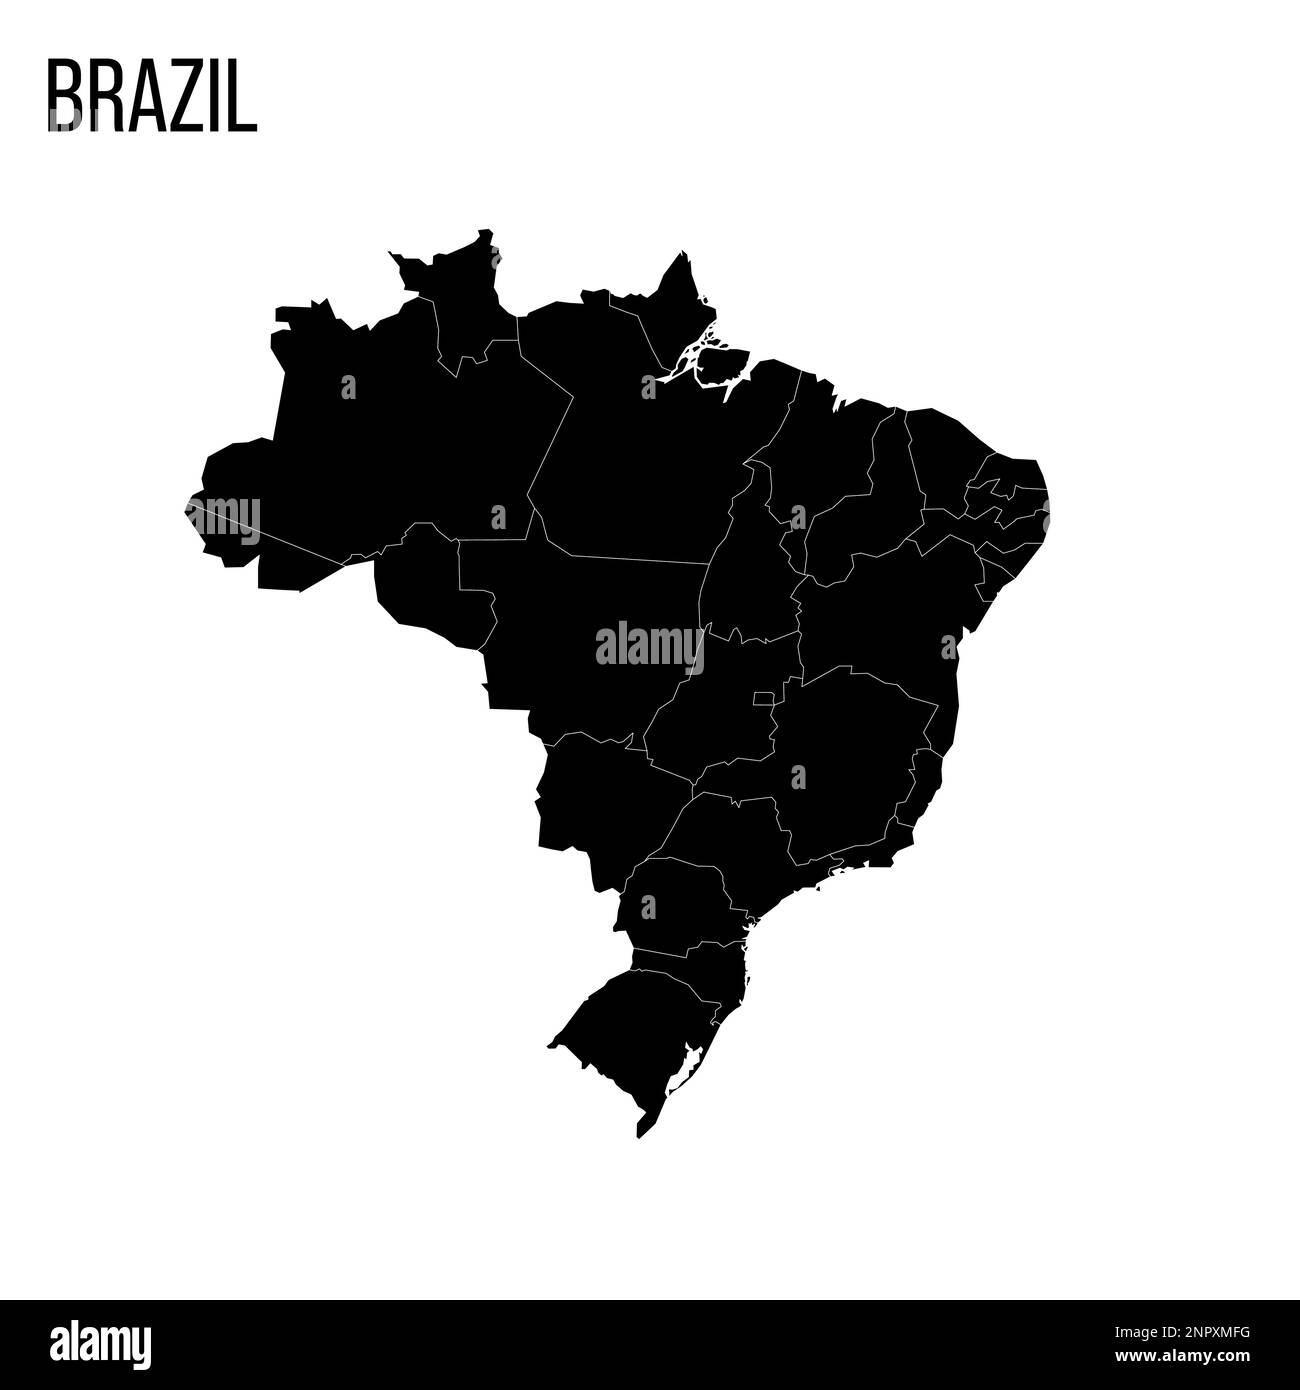 Politische Karte Brasiliens der Verwaltungsabteilungen - Föderative Einheiten Brasiliens. Leere schwarze Karte und Name des Landes. Stock Vektor